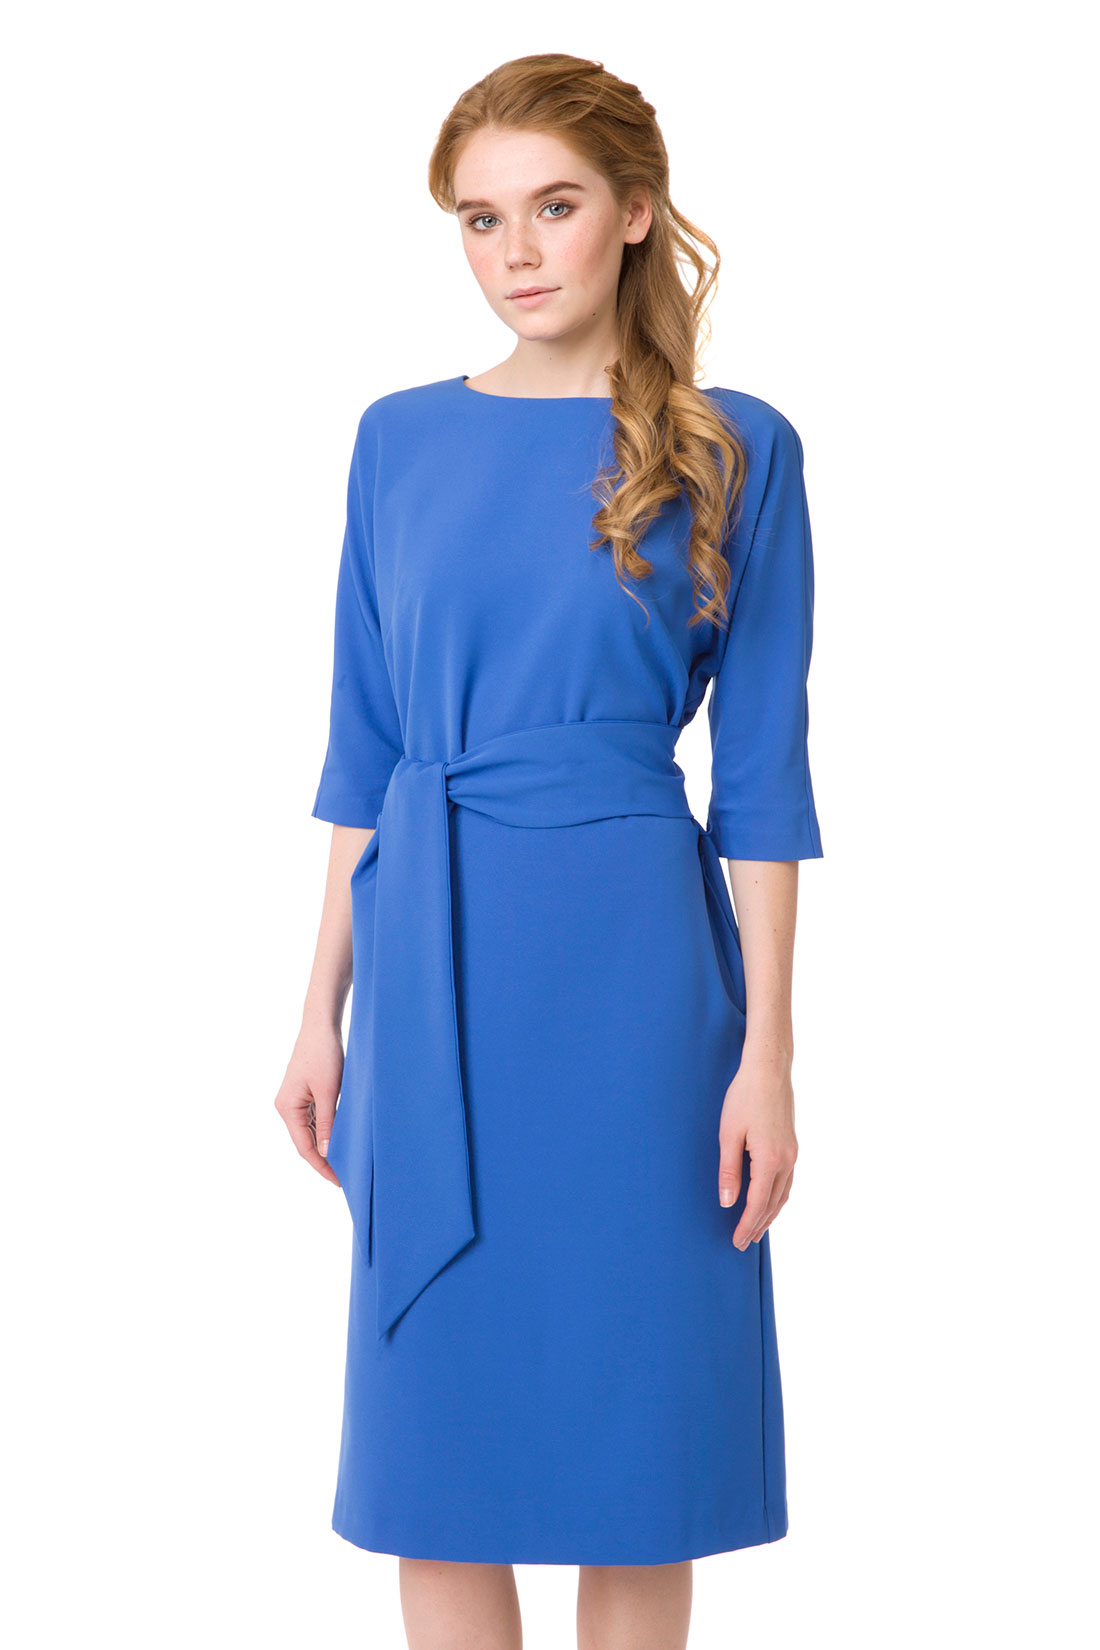 Платье с широким поясом (арт. baon B457024), размер XXL, цвет синий Платье с широким поясом (арт. baon B457024) - фото 5